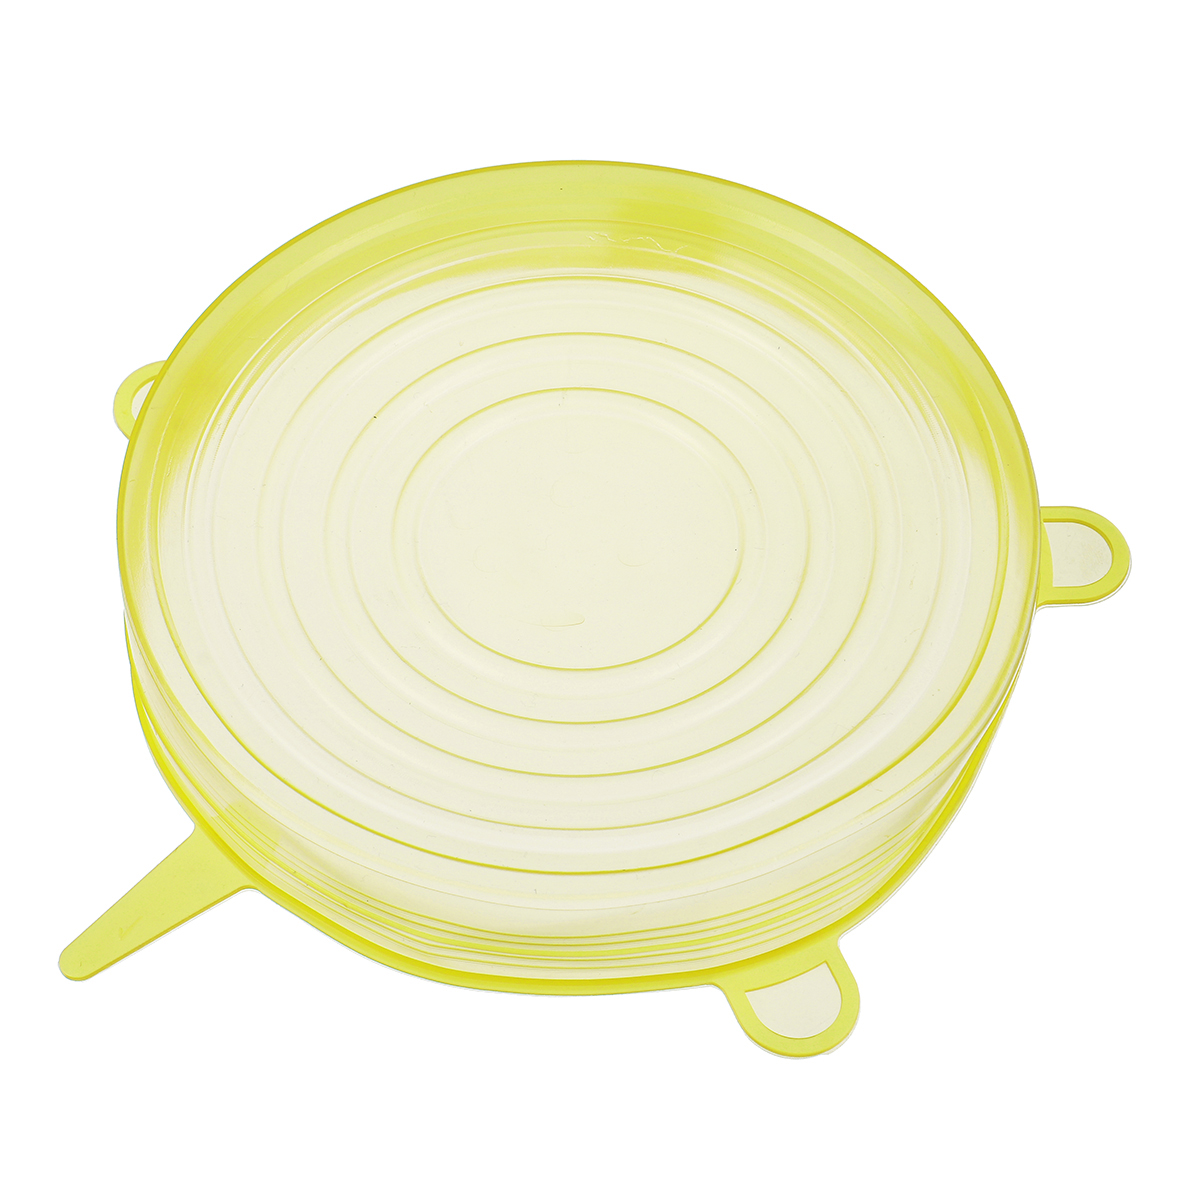 6Pcsset-Silicone-Stretch-Suction-Pot-Lids-Kitchen-Cover-Pan-Bowl-Stopper-Cap-1633242-4